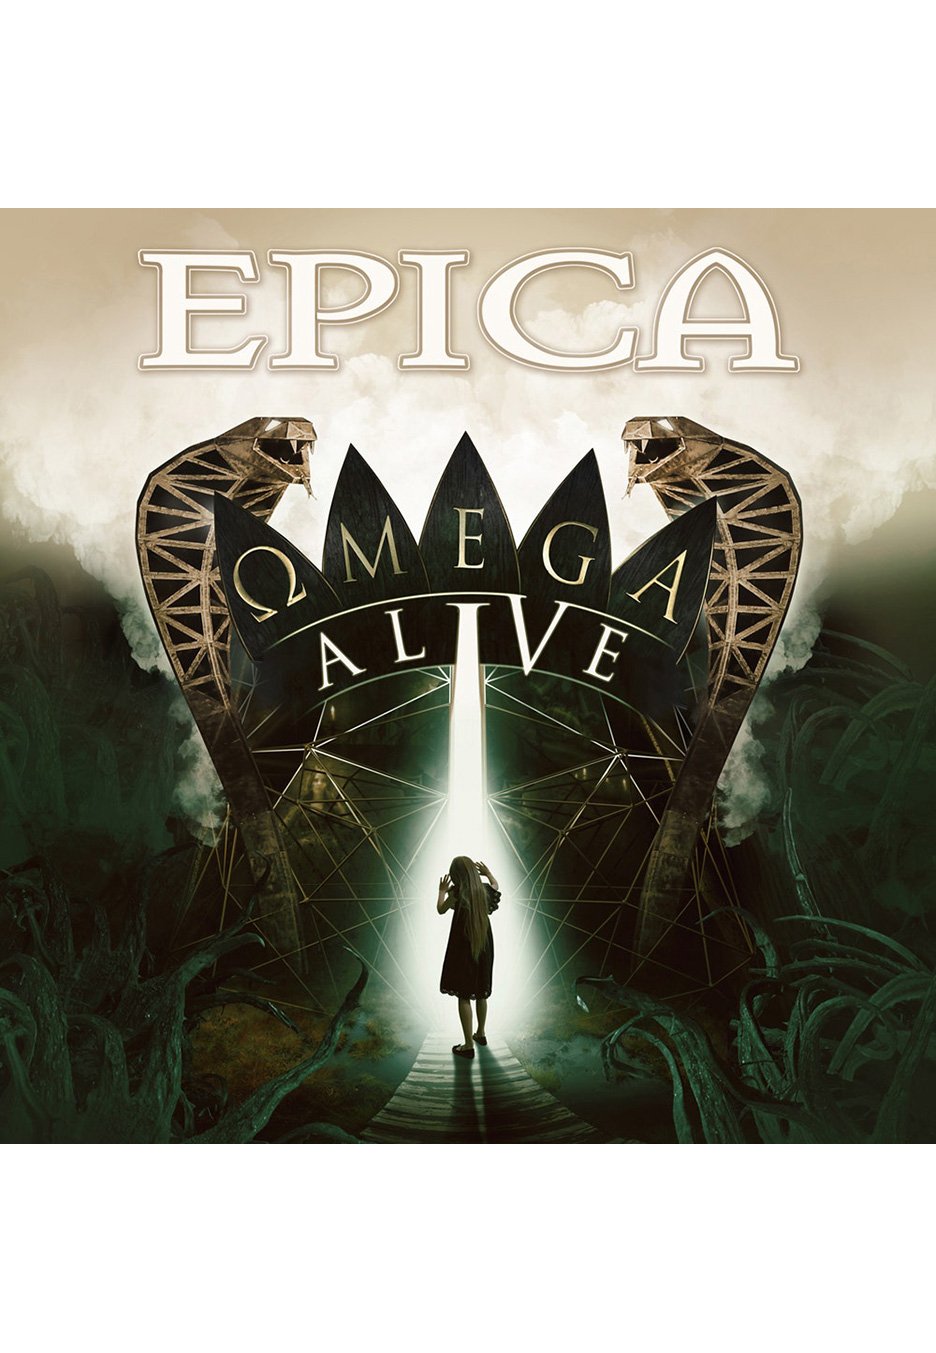 Epica - Omega Alive Sun Yellow - Colored 3 Vinyl